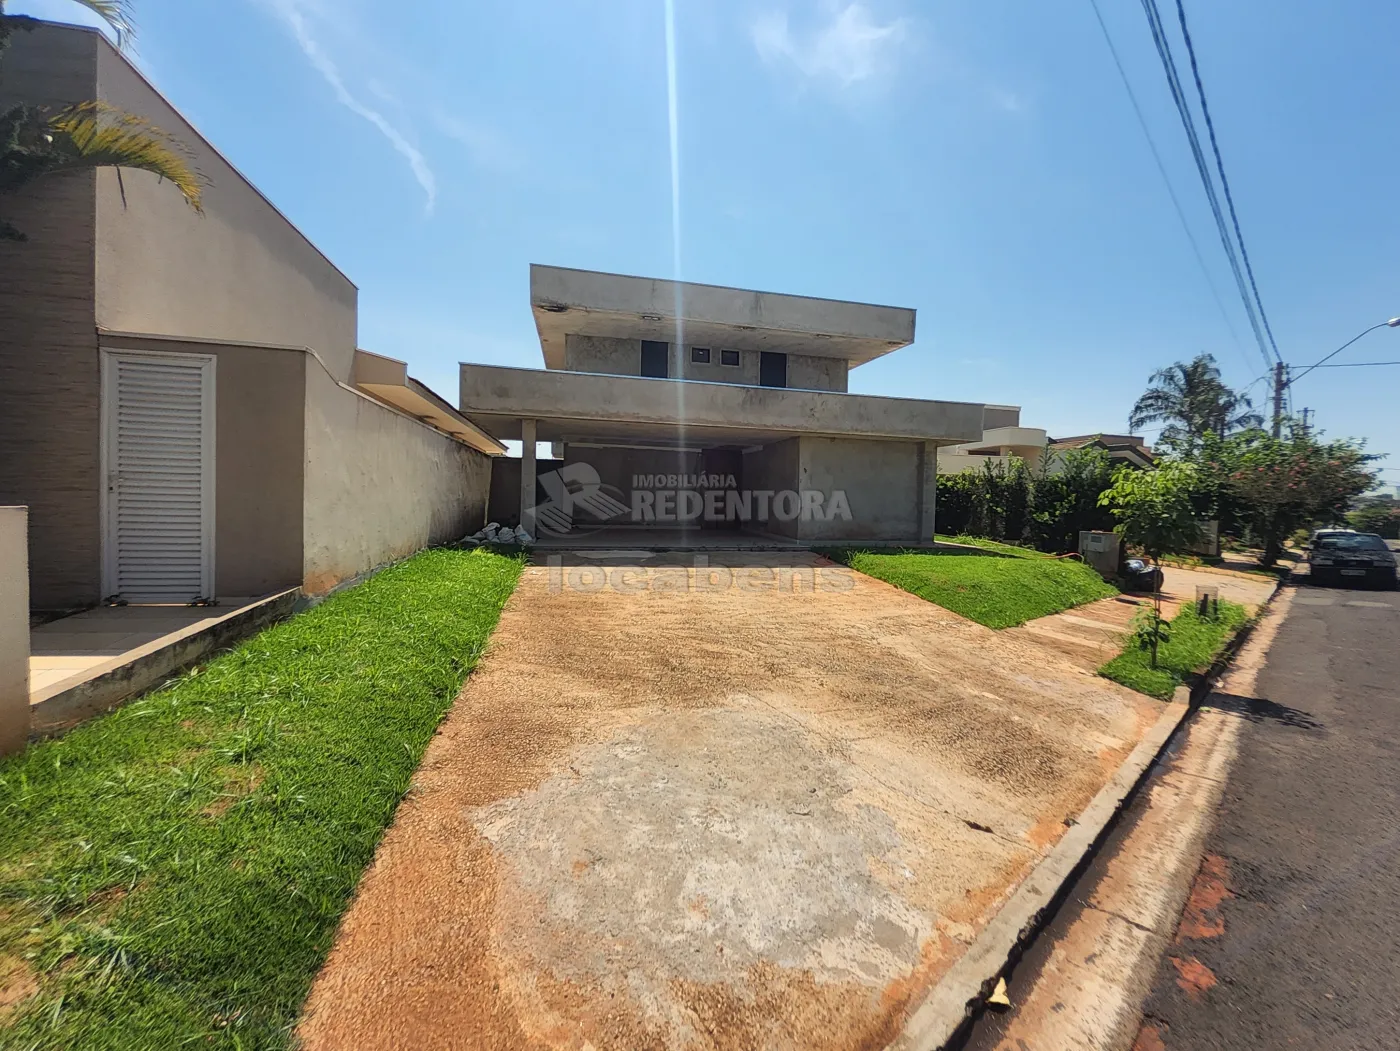 Comprar Casa / Condomínio em São José do Rio Preto R$ 1.800.000,00 - Foto 2